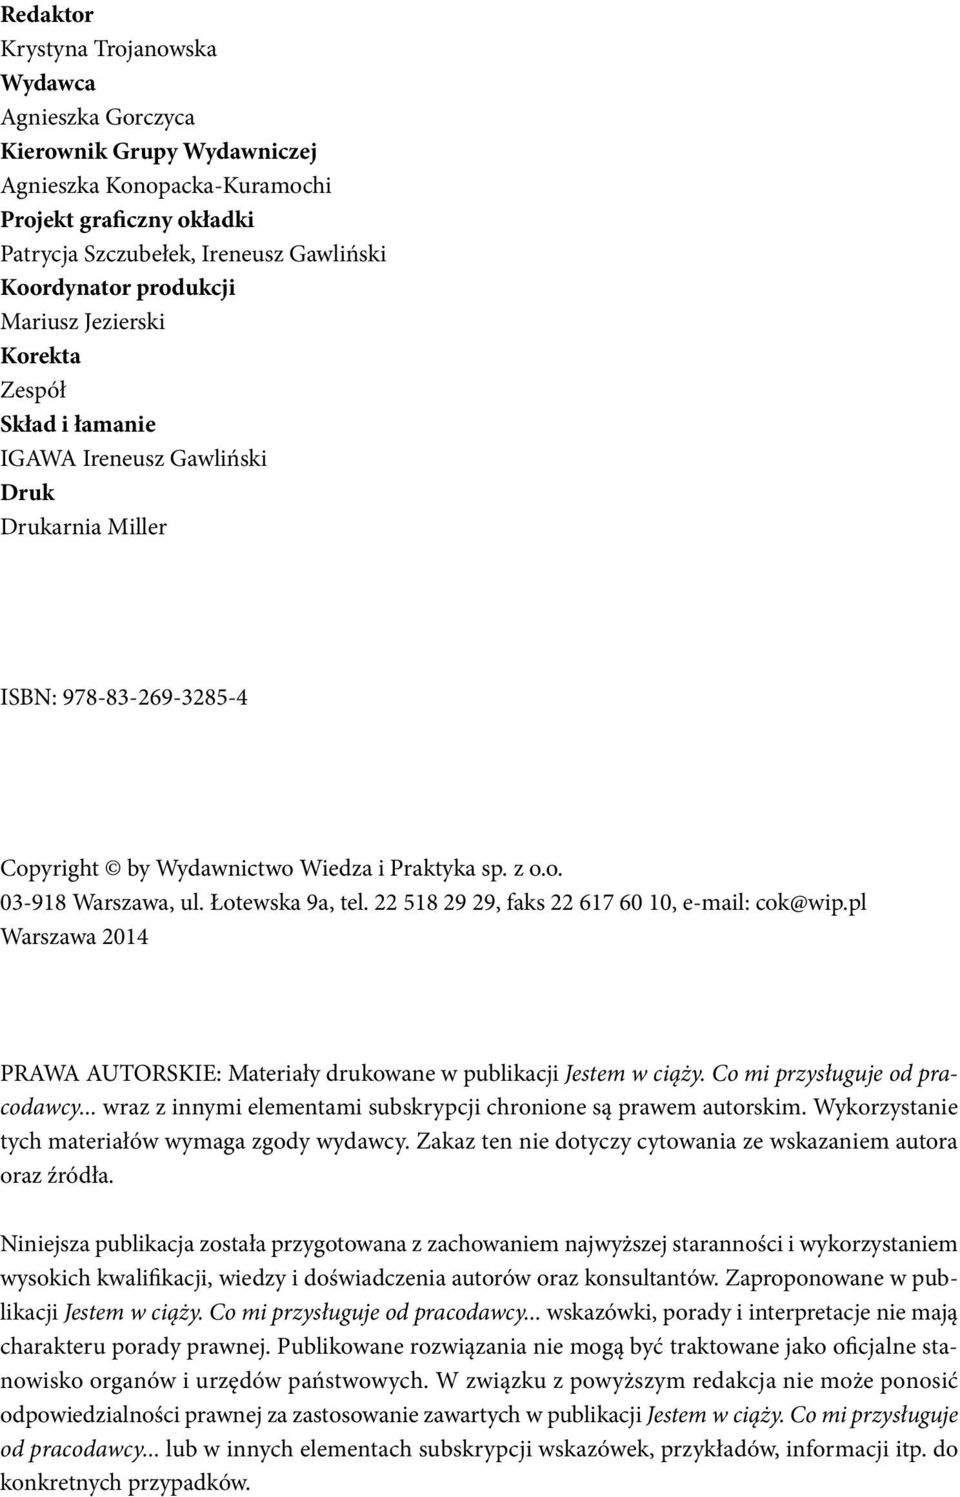 Łotewska 9a, tel. 22 518 29 29, faks 22 617 60 10, e-mail: cok@wip.pl Warszawa 2014 PRAWA AUTORSKIE: Materiały drukowane w publikacji Jestem w ciąży. Co mi przysługuje od pracodawcy.